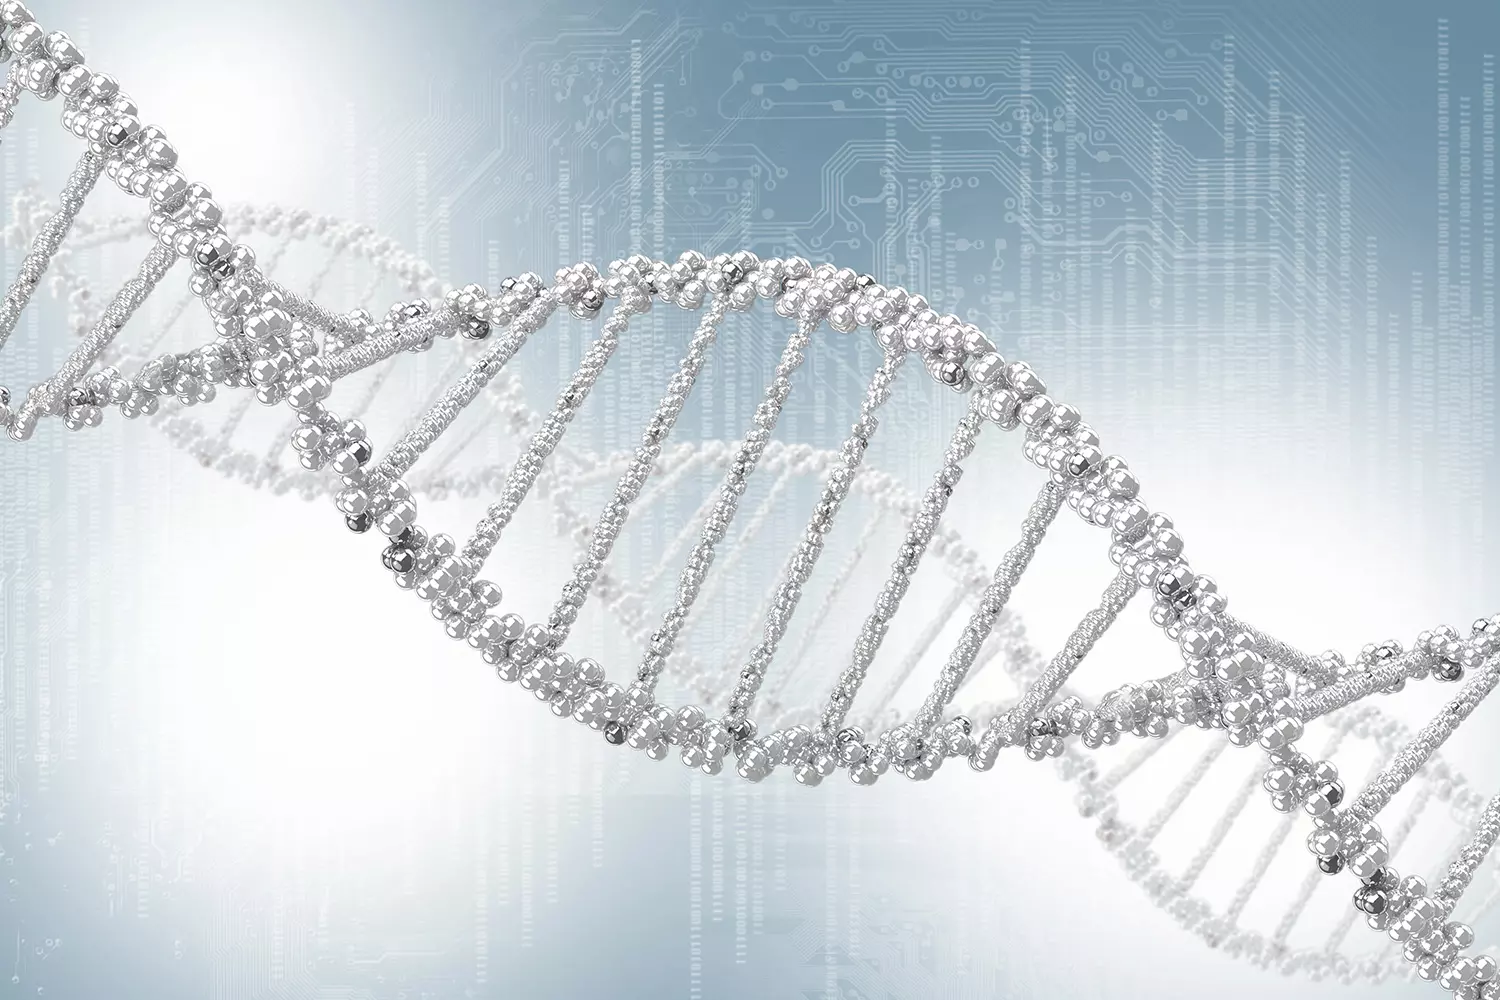 Genetische Algorithmen orientieren sich an der biologischen Genetik und Evolution.